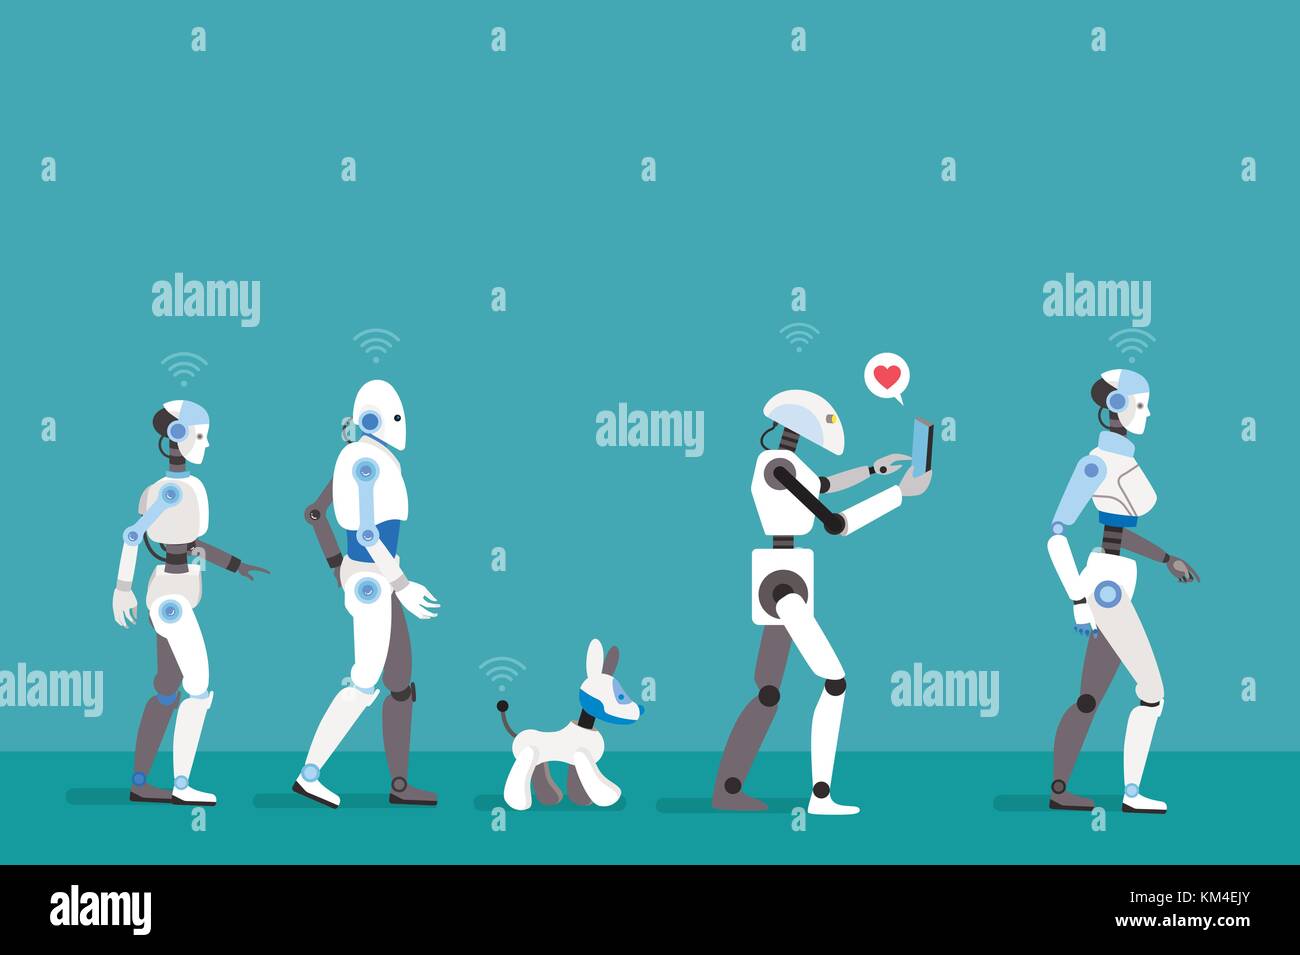 Android Robots caminando. Imagen futurista de un futuro cercano. Ilustración del Vector